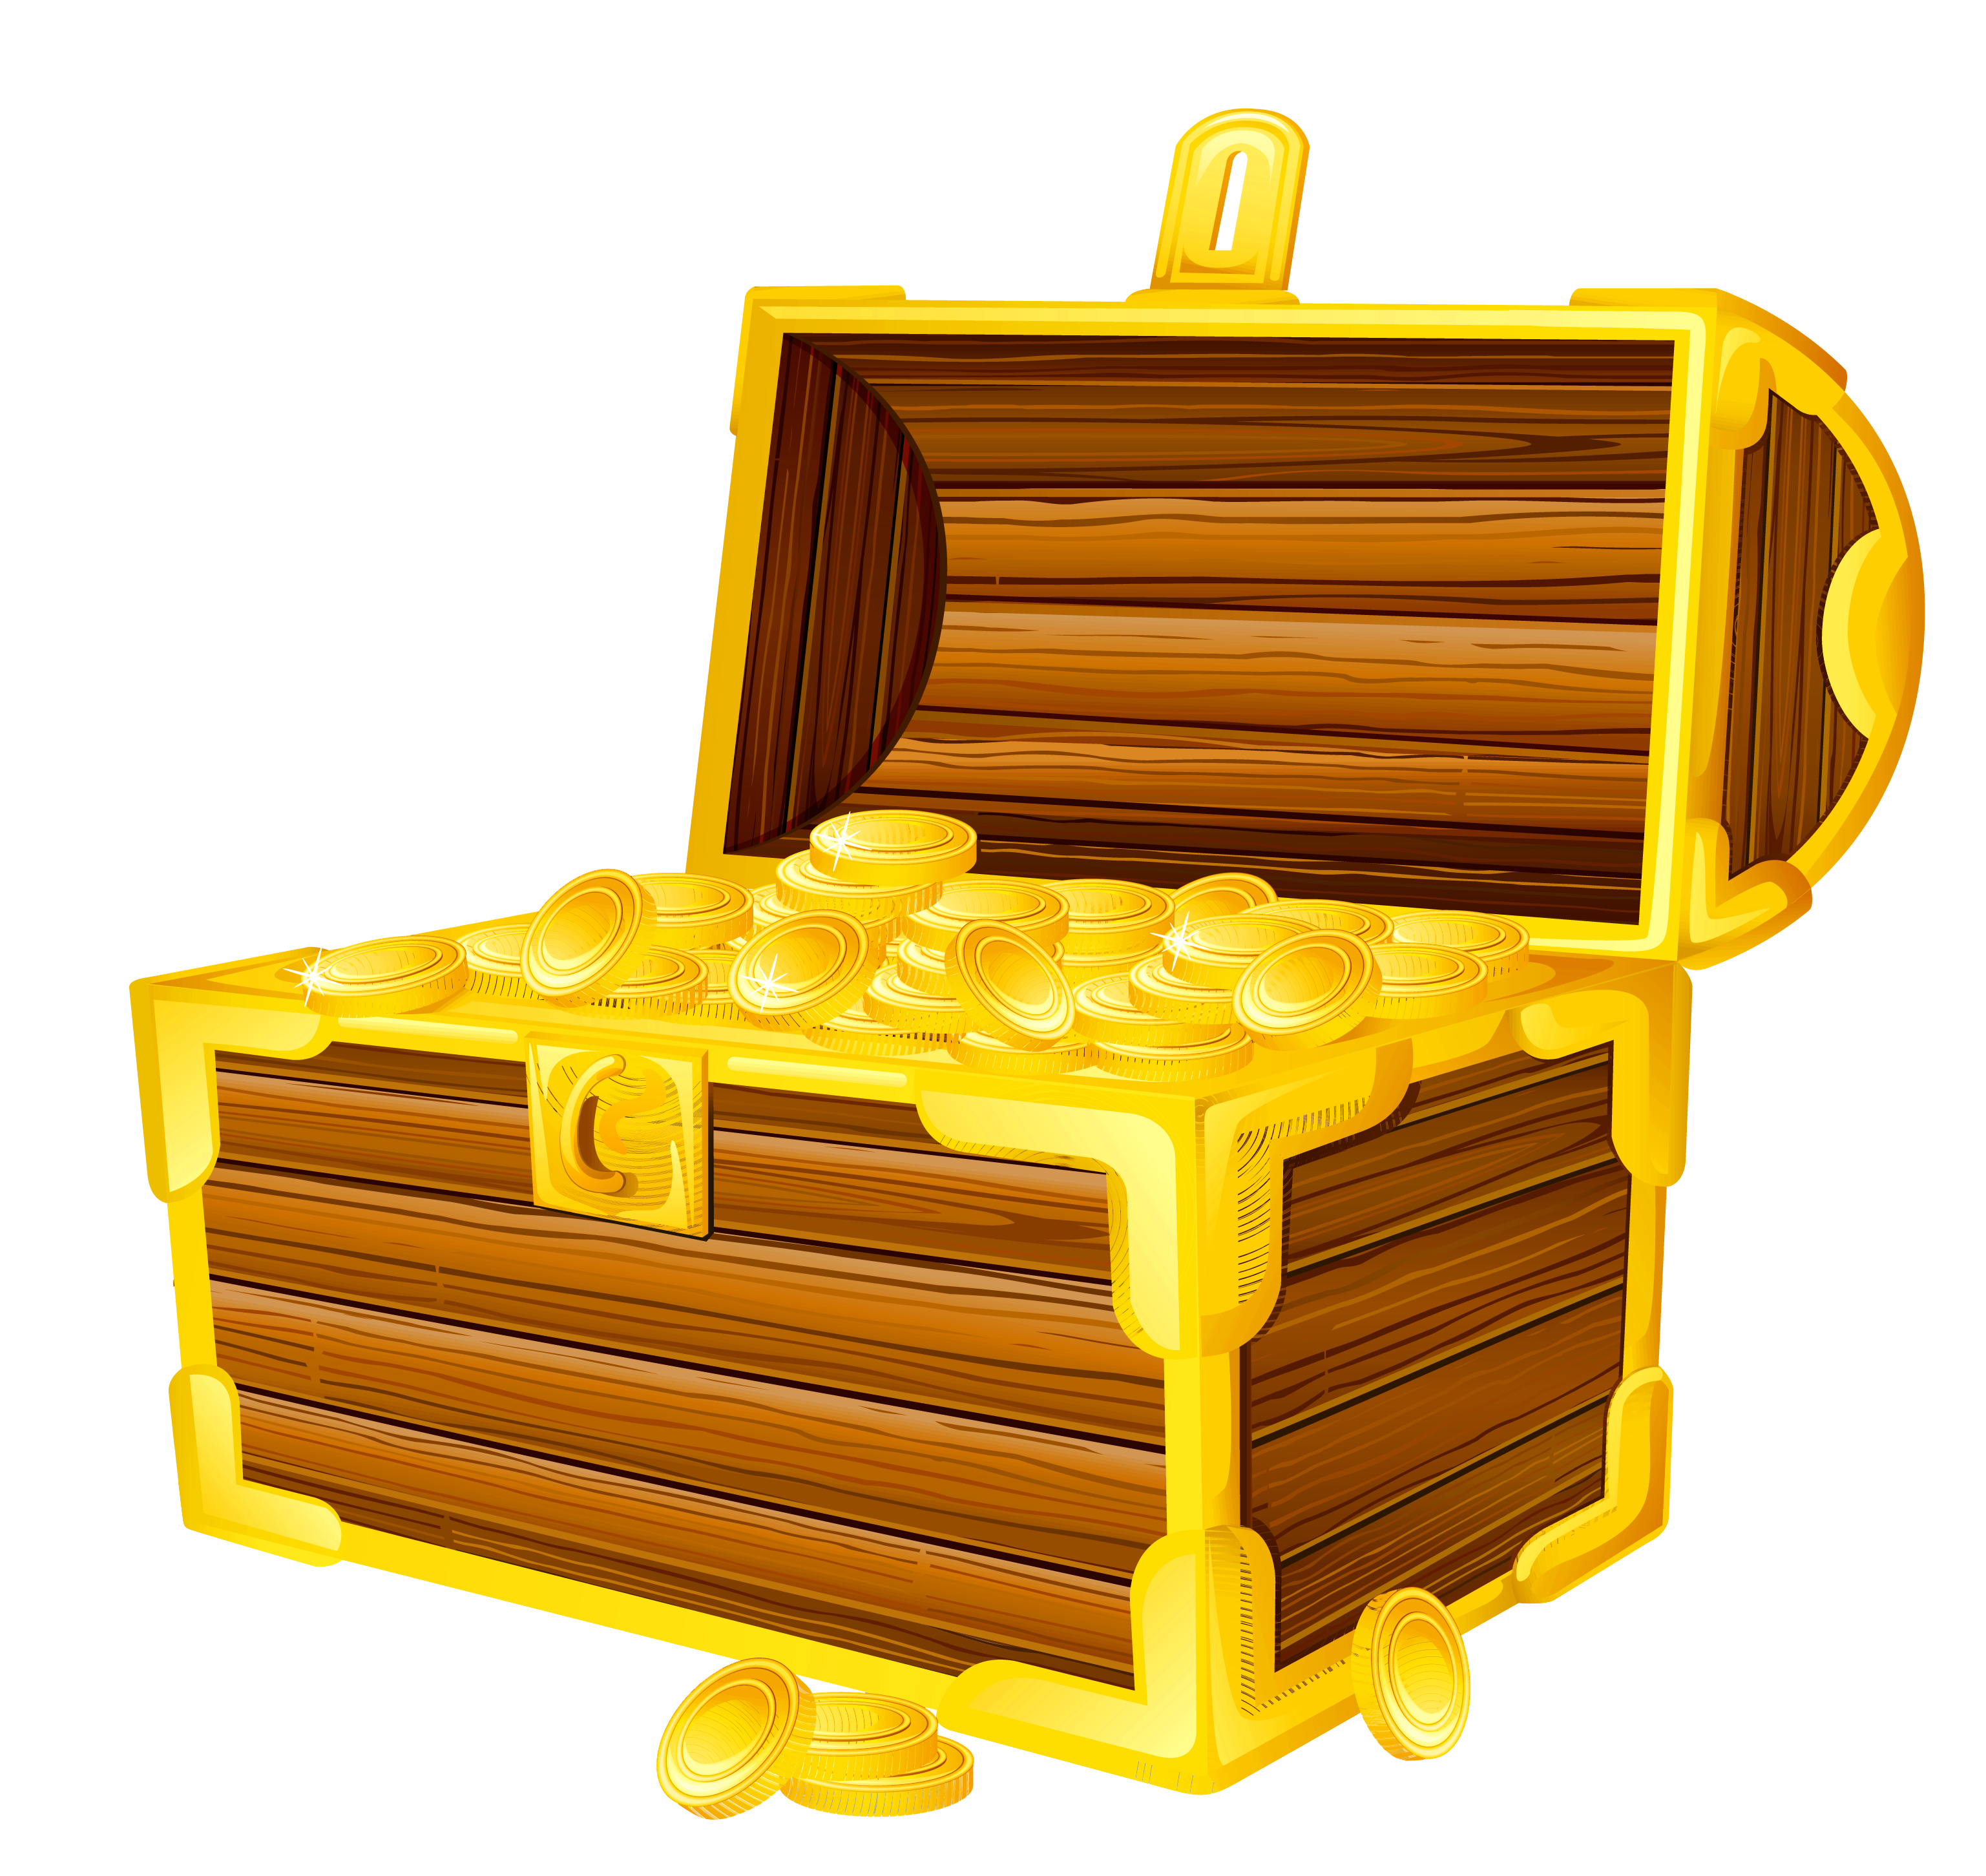 Treasure chest picture clipar - Treasure Chest Clip Art